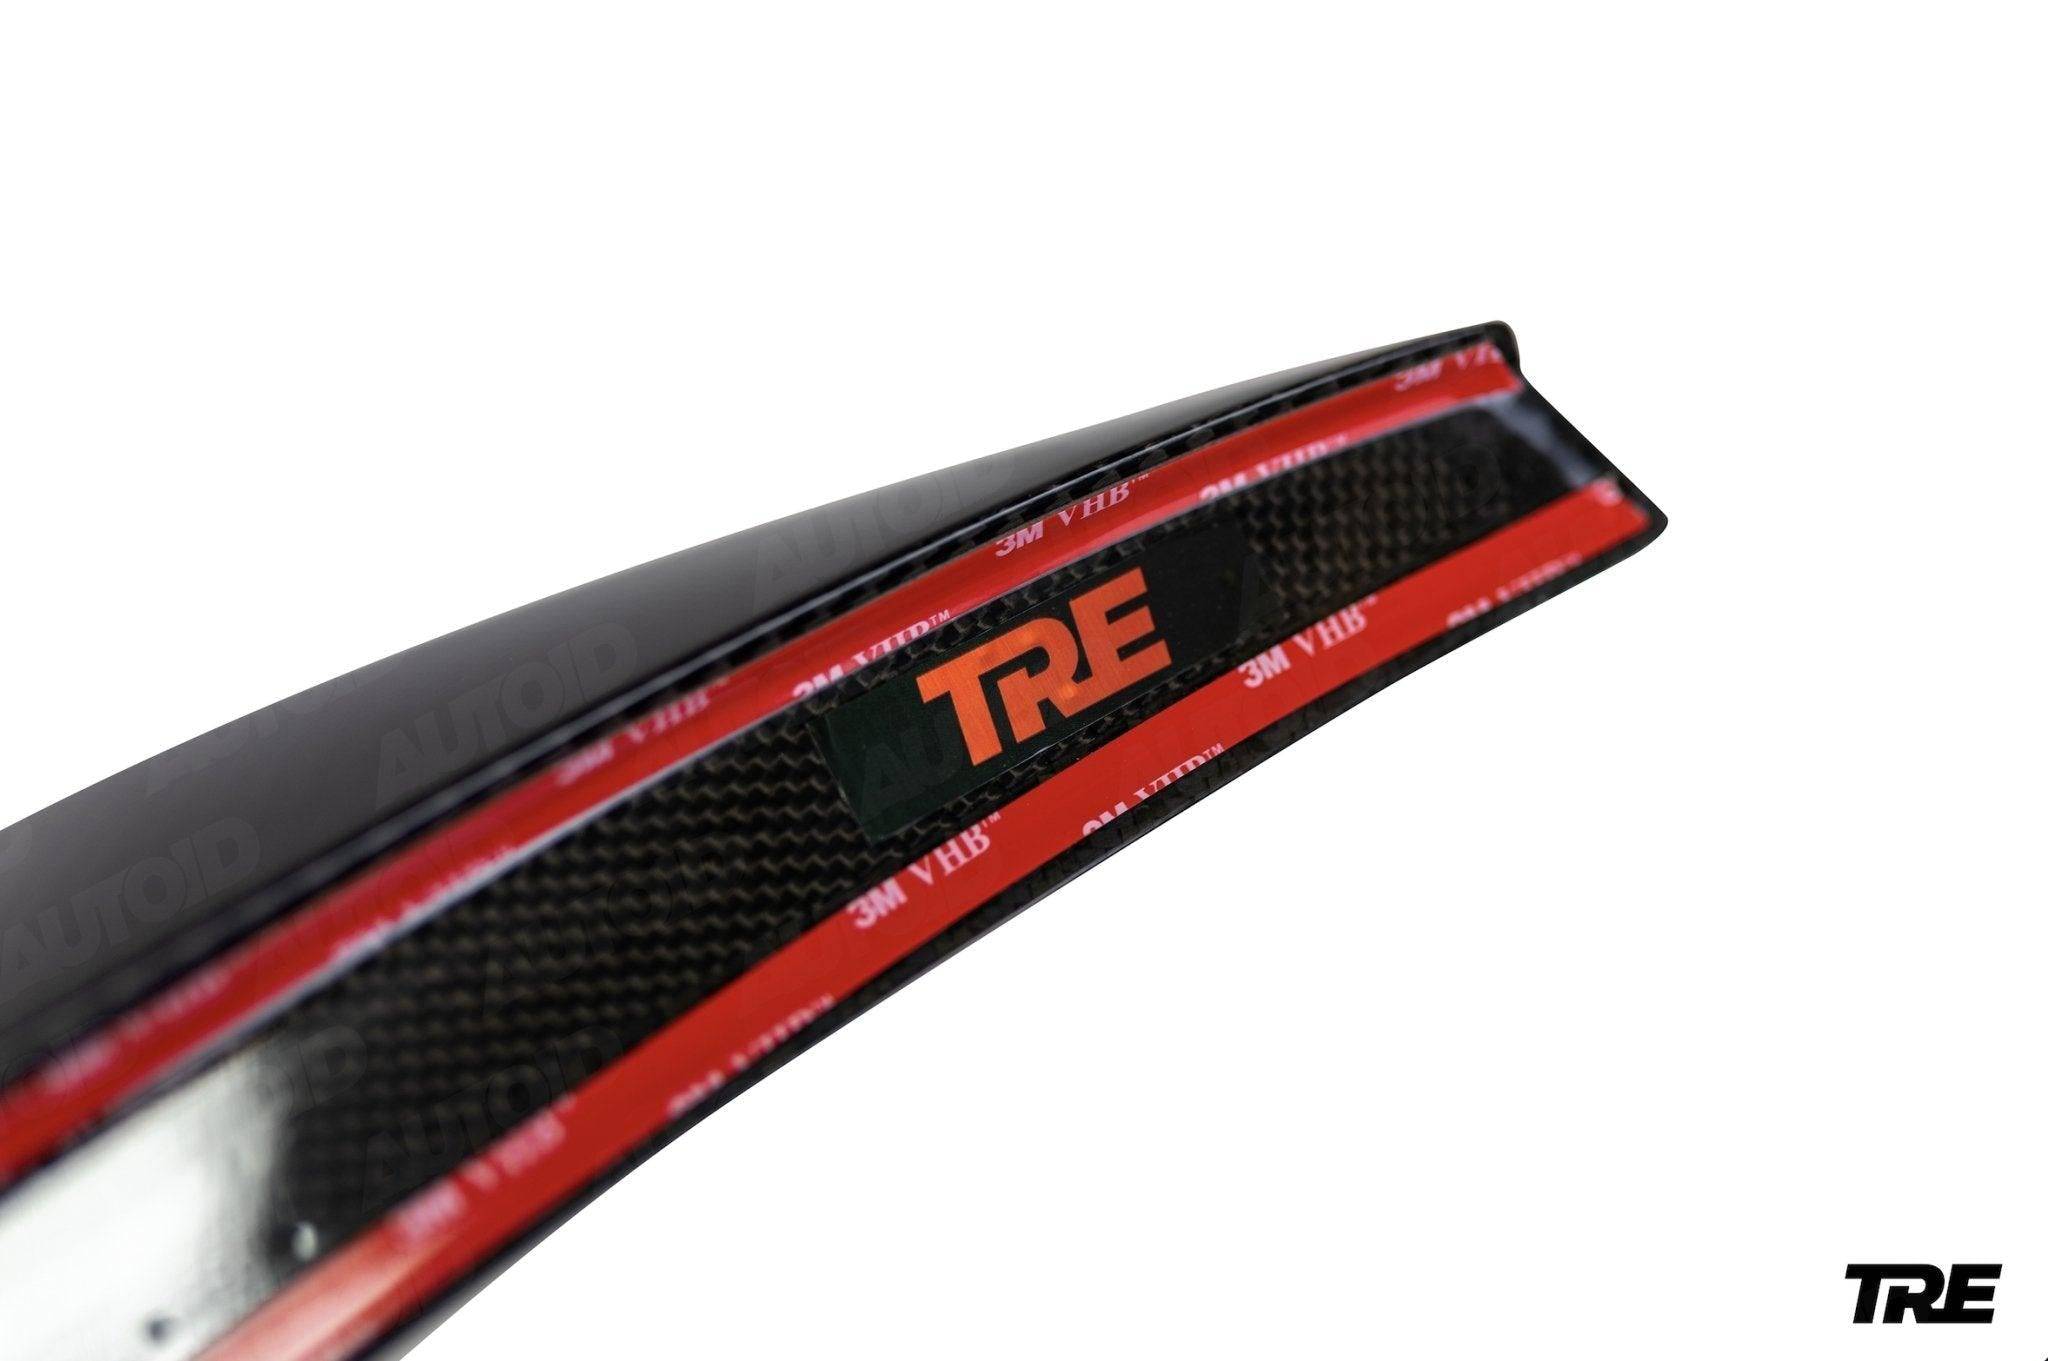 TRE Pre-Preg Carbon Fibre Ducktail Rear Spoiler for Audi RS3 Saloon (2017-2020, 8V LCI), Rear Spoilers, TRE - AUTOID | Premium Automotive Accessories